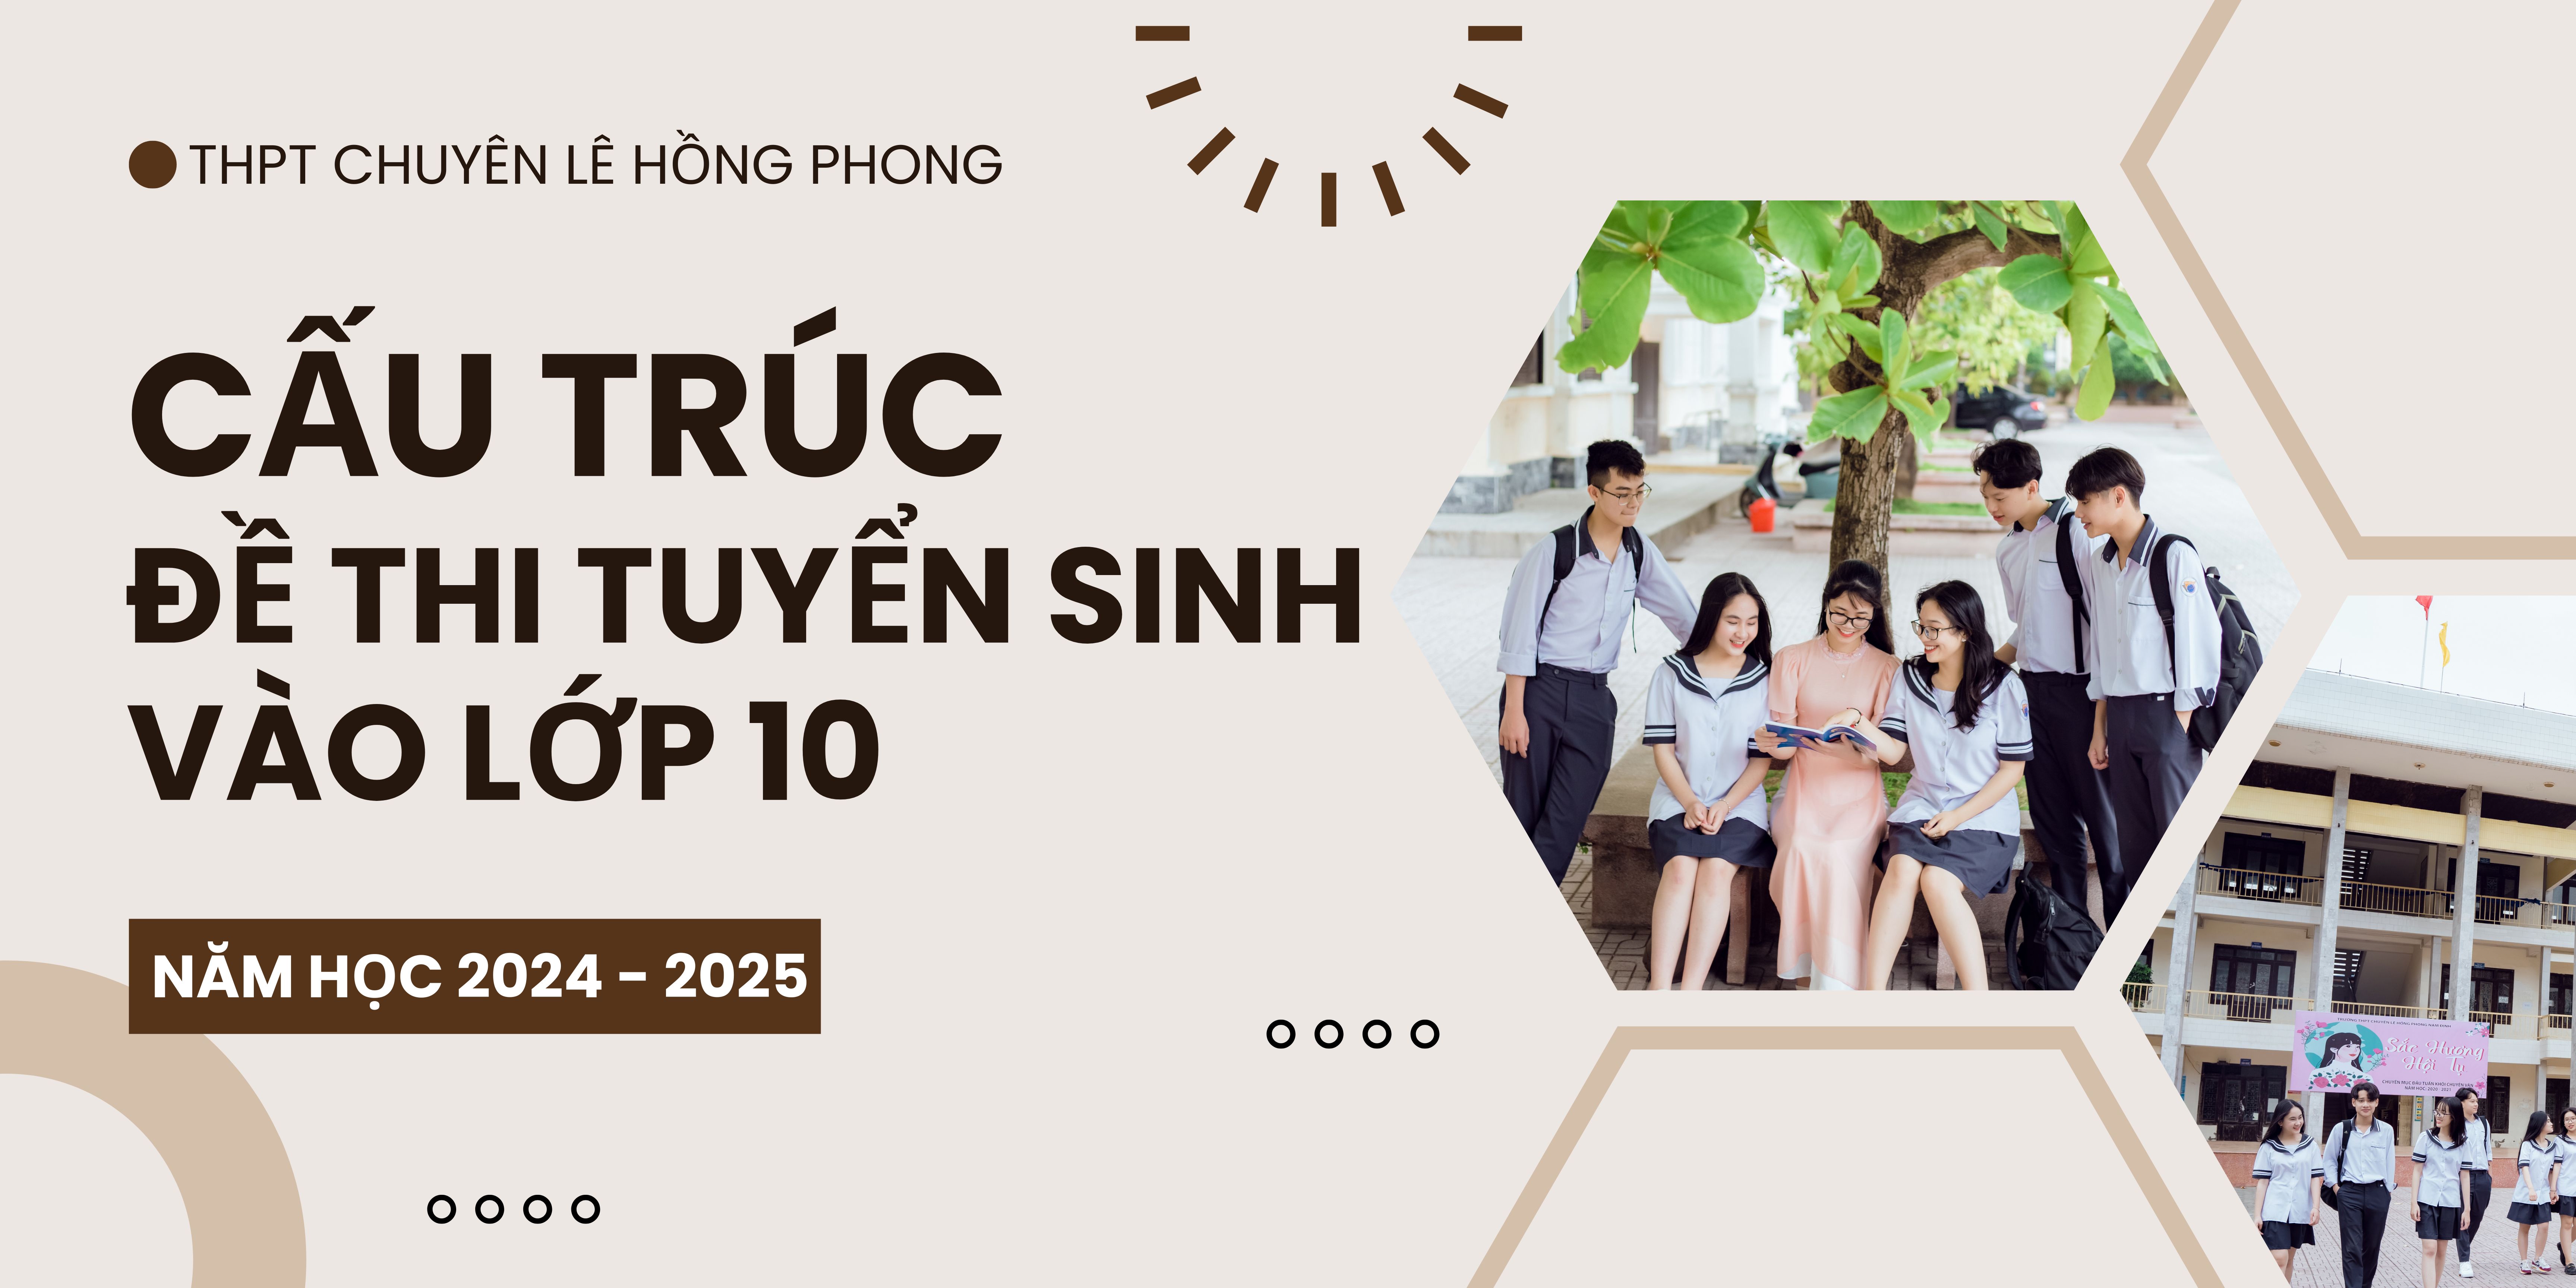 Nội dung, yêu cầu đề thi tuyển sinh trường THPT chuyên Lê Hồng Phong năm học 2024 - 2025